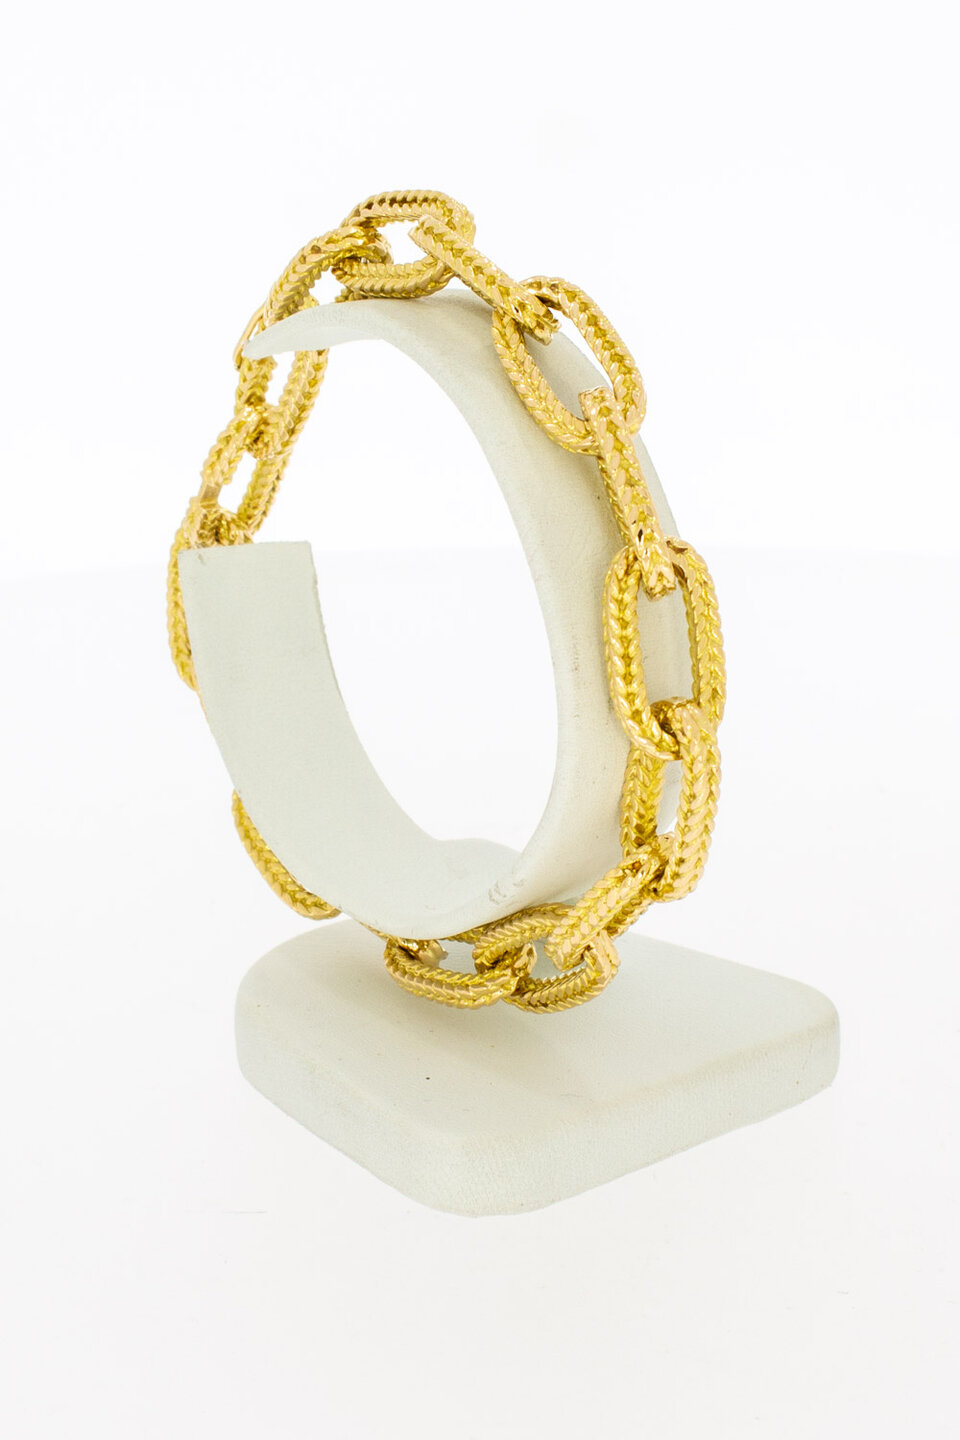 18 Karaat geel gouden Anker armband - 21 cm